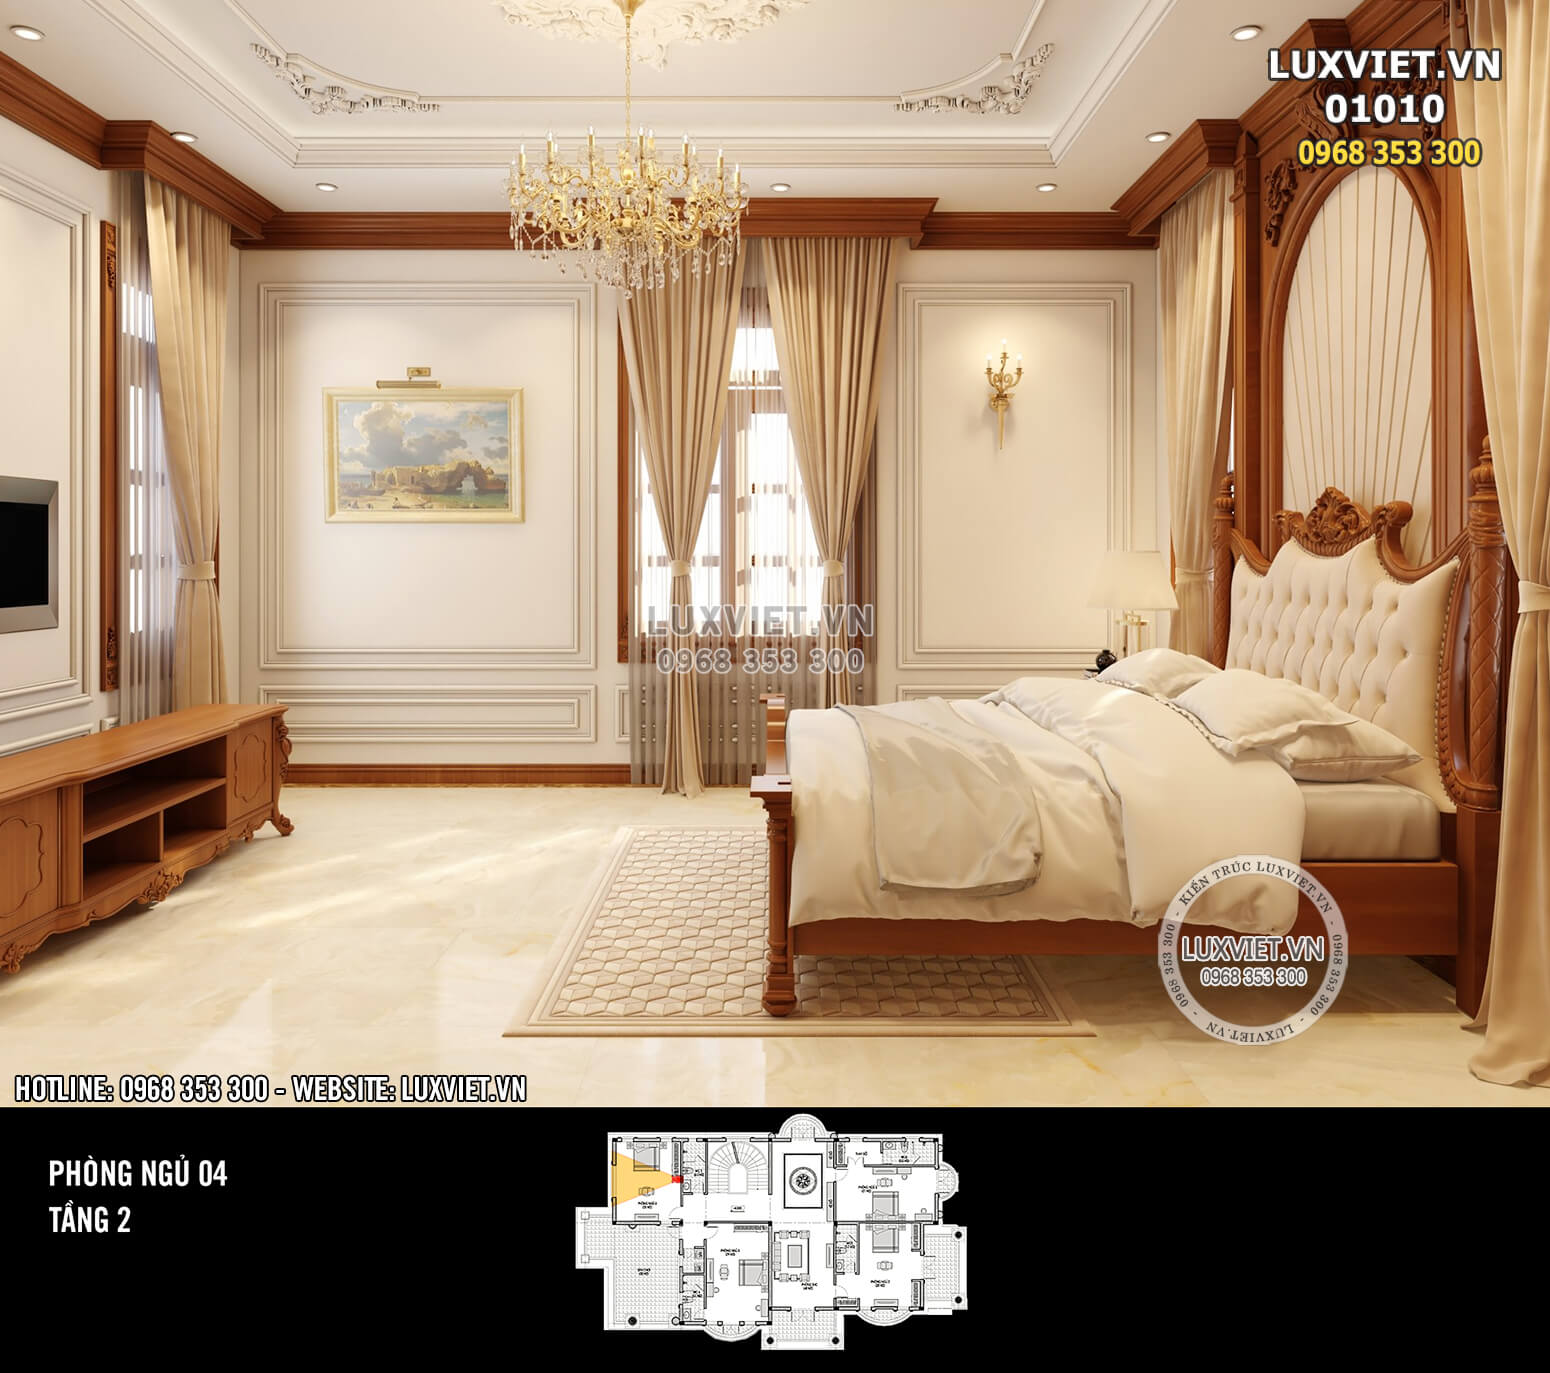 Hình ảnh: Phòng ngủ tầng 2 với nội thất gỗ tân cổ điển - LV 01010